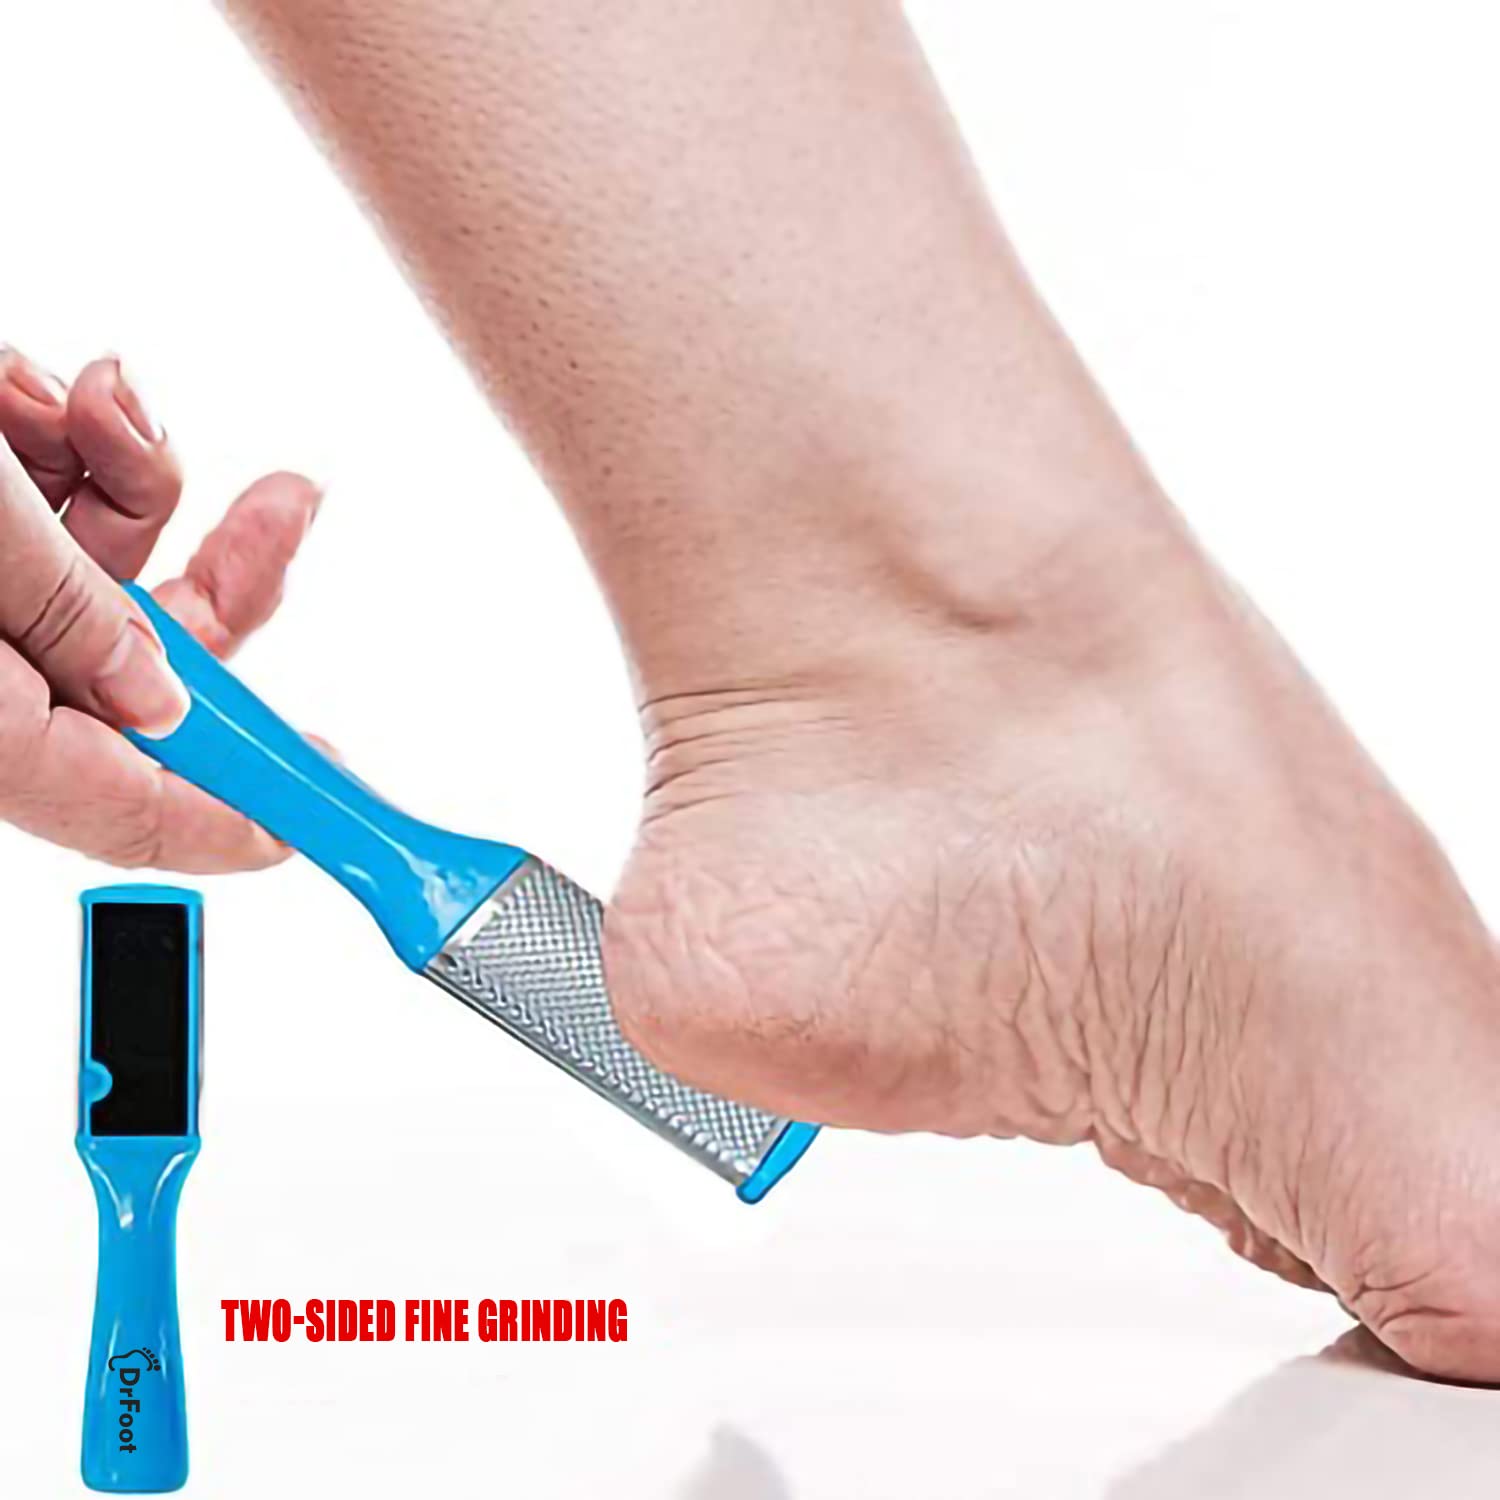 Dr Foot Pedicure Tools for Feet - 8 in 1 Pedicure Kit | Foot Scrubber for Dead Skin, Callus Remover, Foot Scraper, Foot File, Pitchfork, Filer for Nail Repair - 1 Set (Pack of 2)